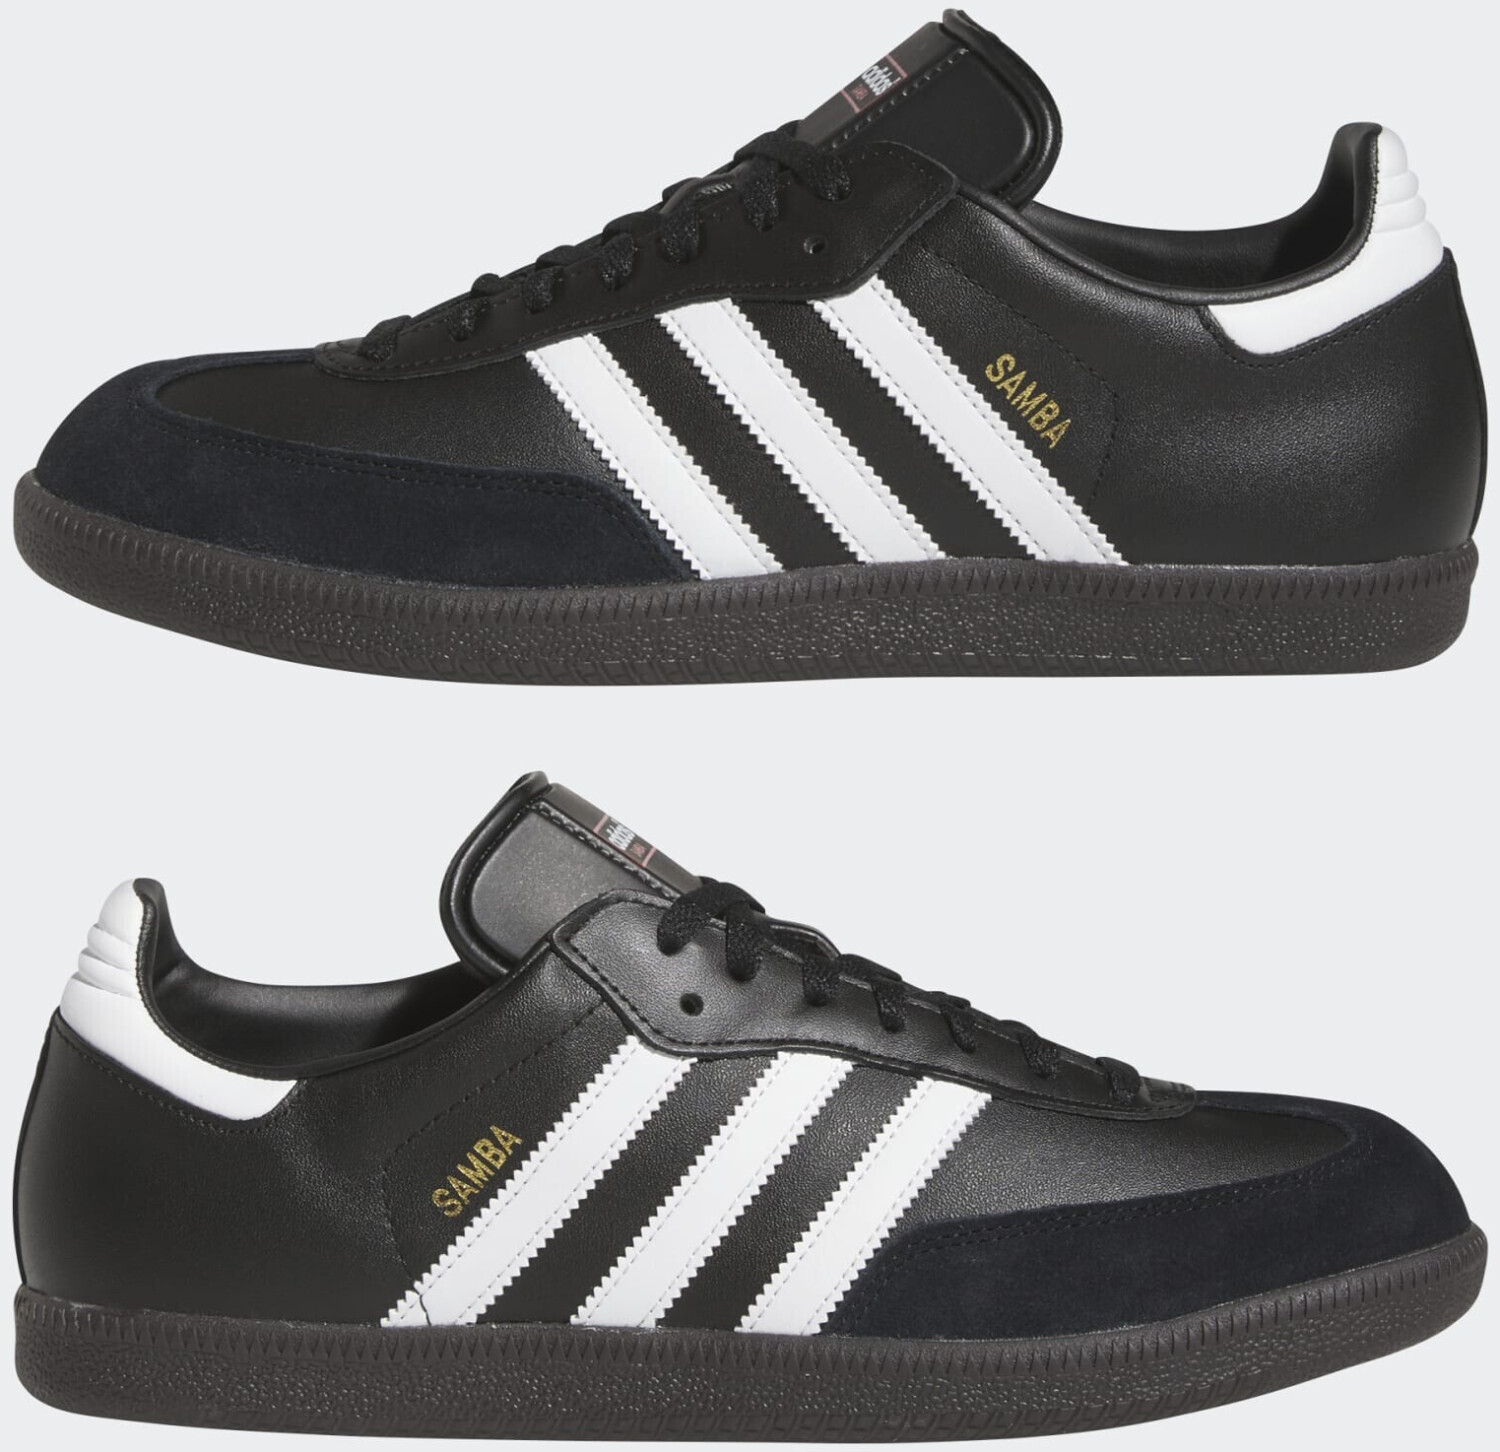 Adidas Samba black/white/gum (019000) desde 63,95 € | Compara